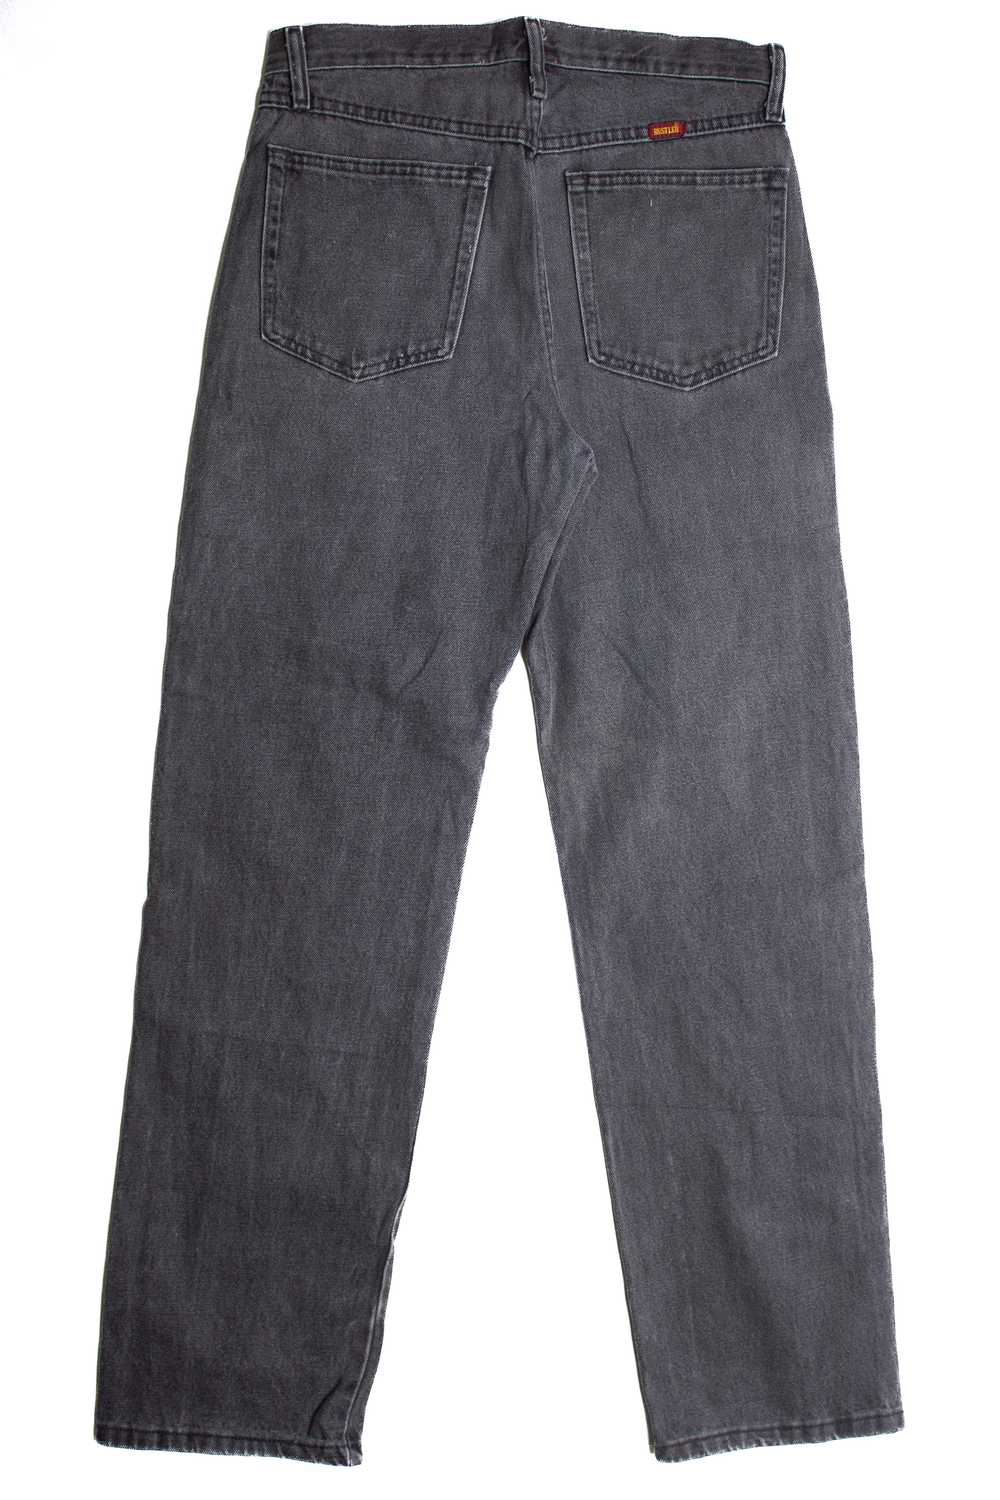 Vintage Rustler Denim Jeans (1990s) 1013 - image 3